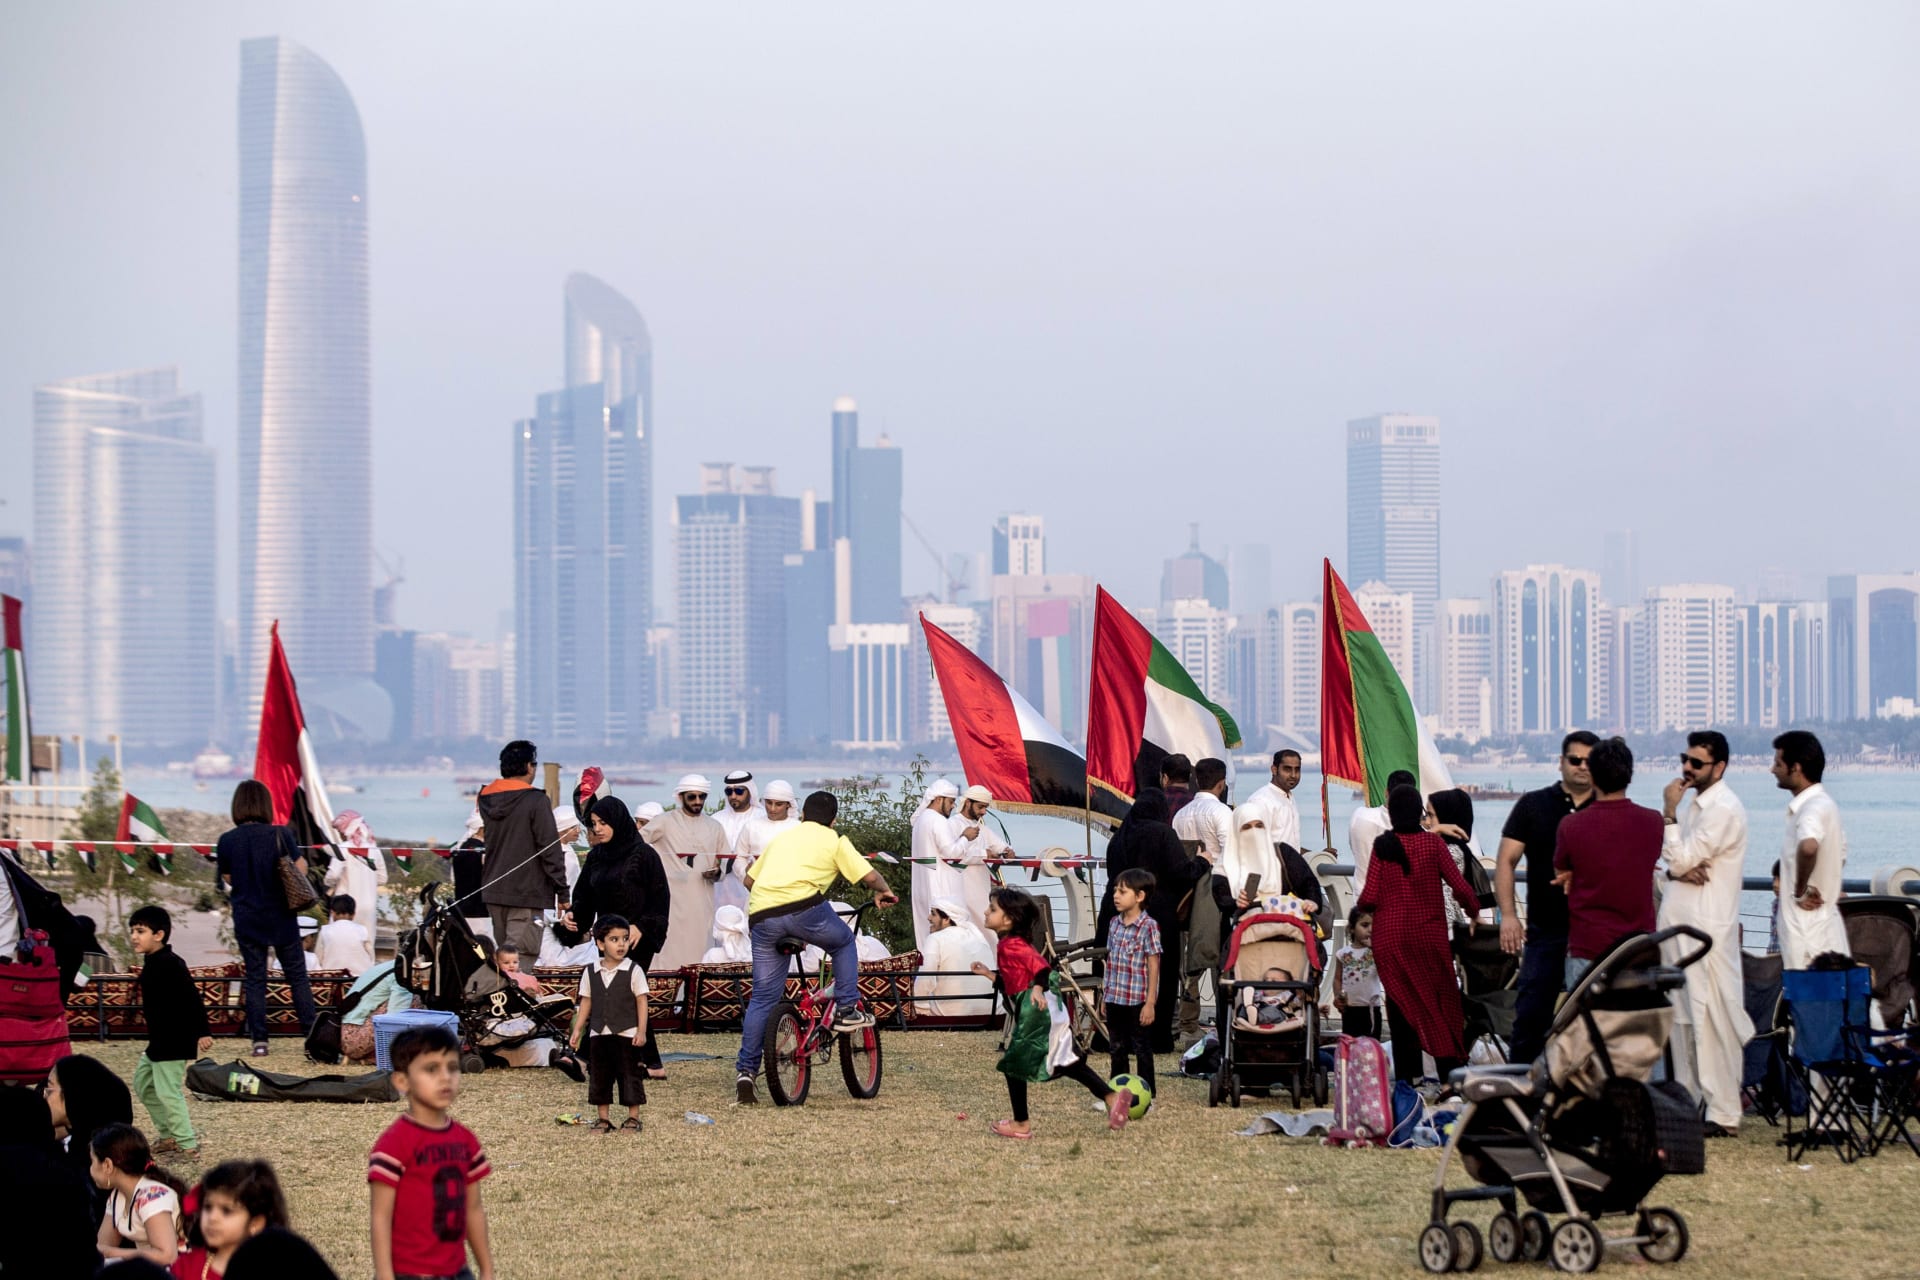 صورة أرشيفية من احتفال باليوم الوطني الإماراتي في أبوظبي